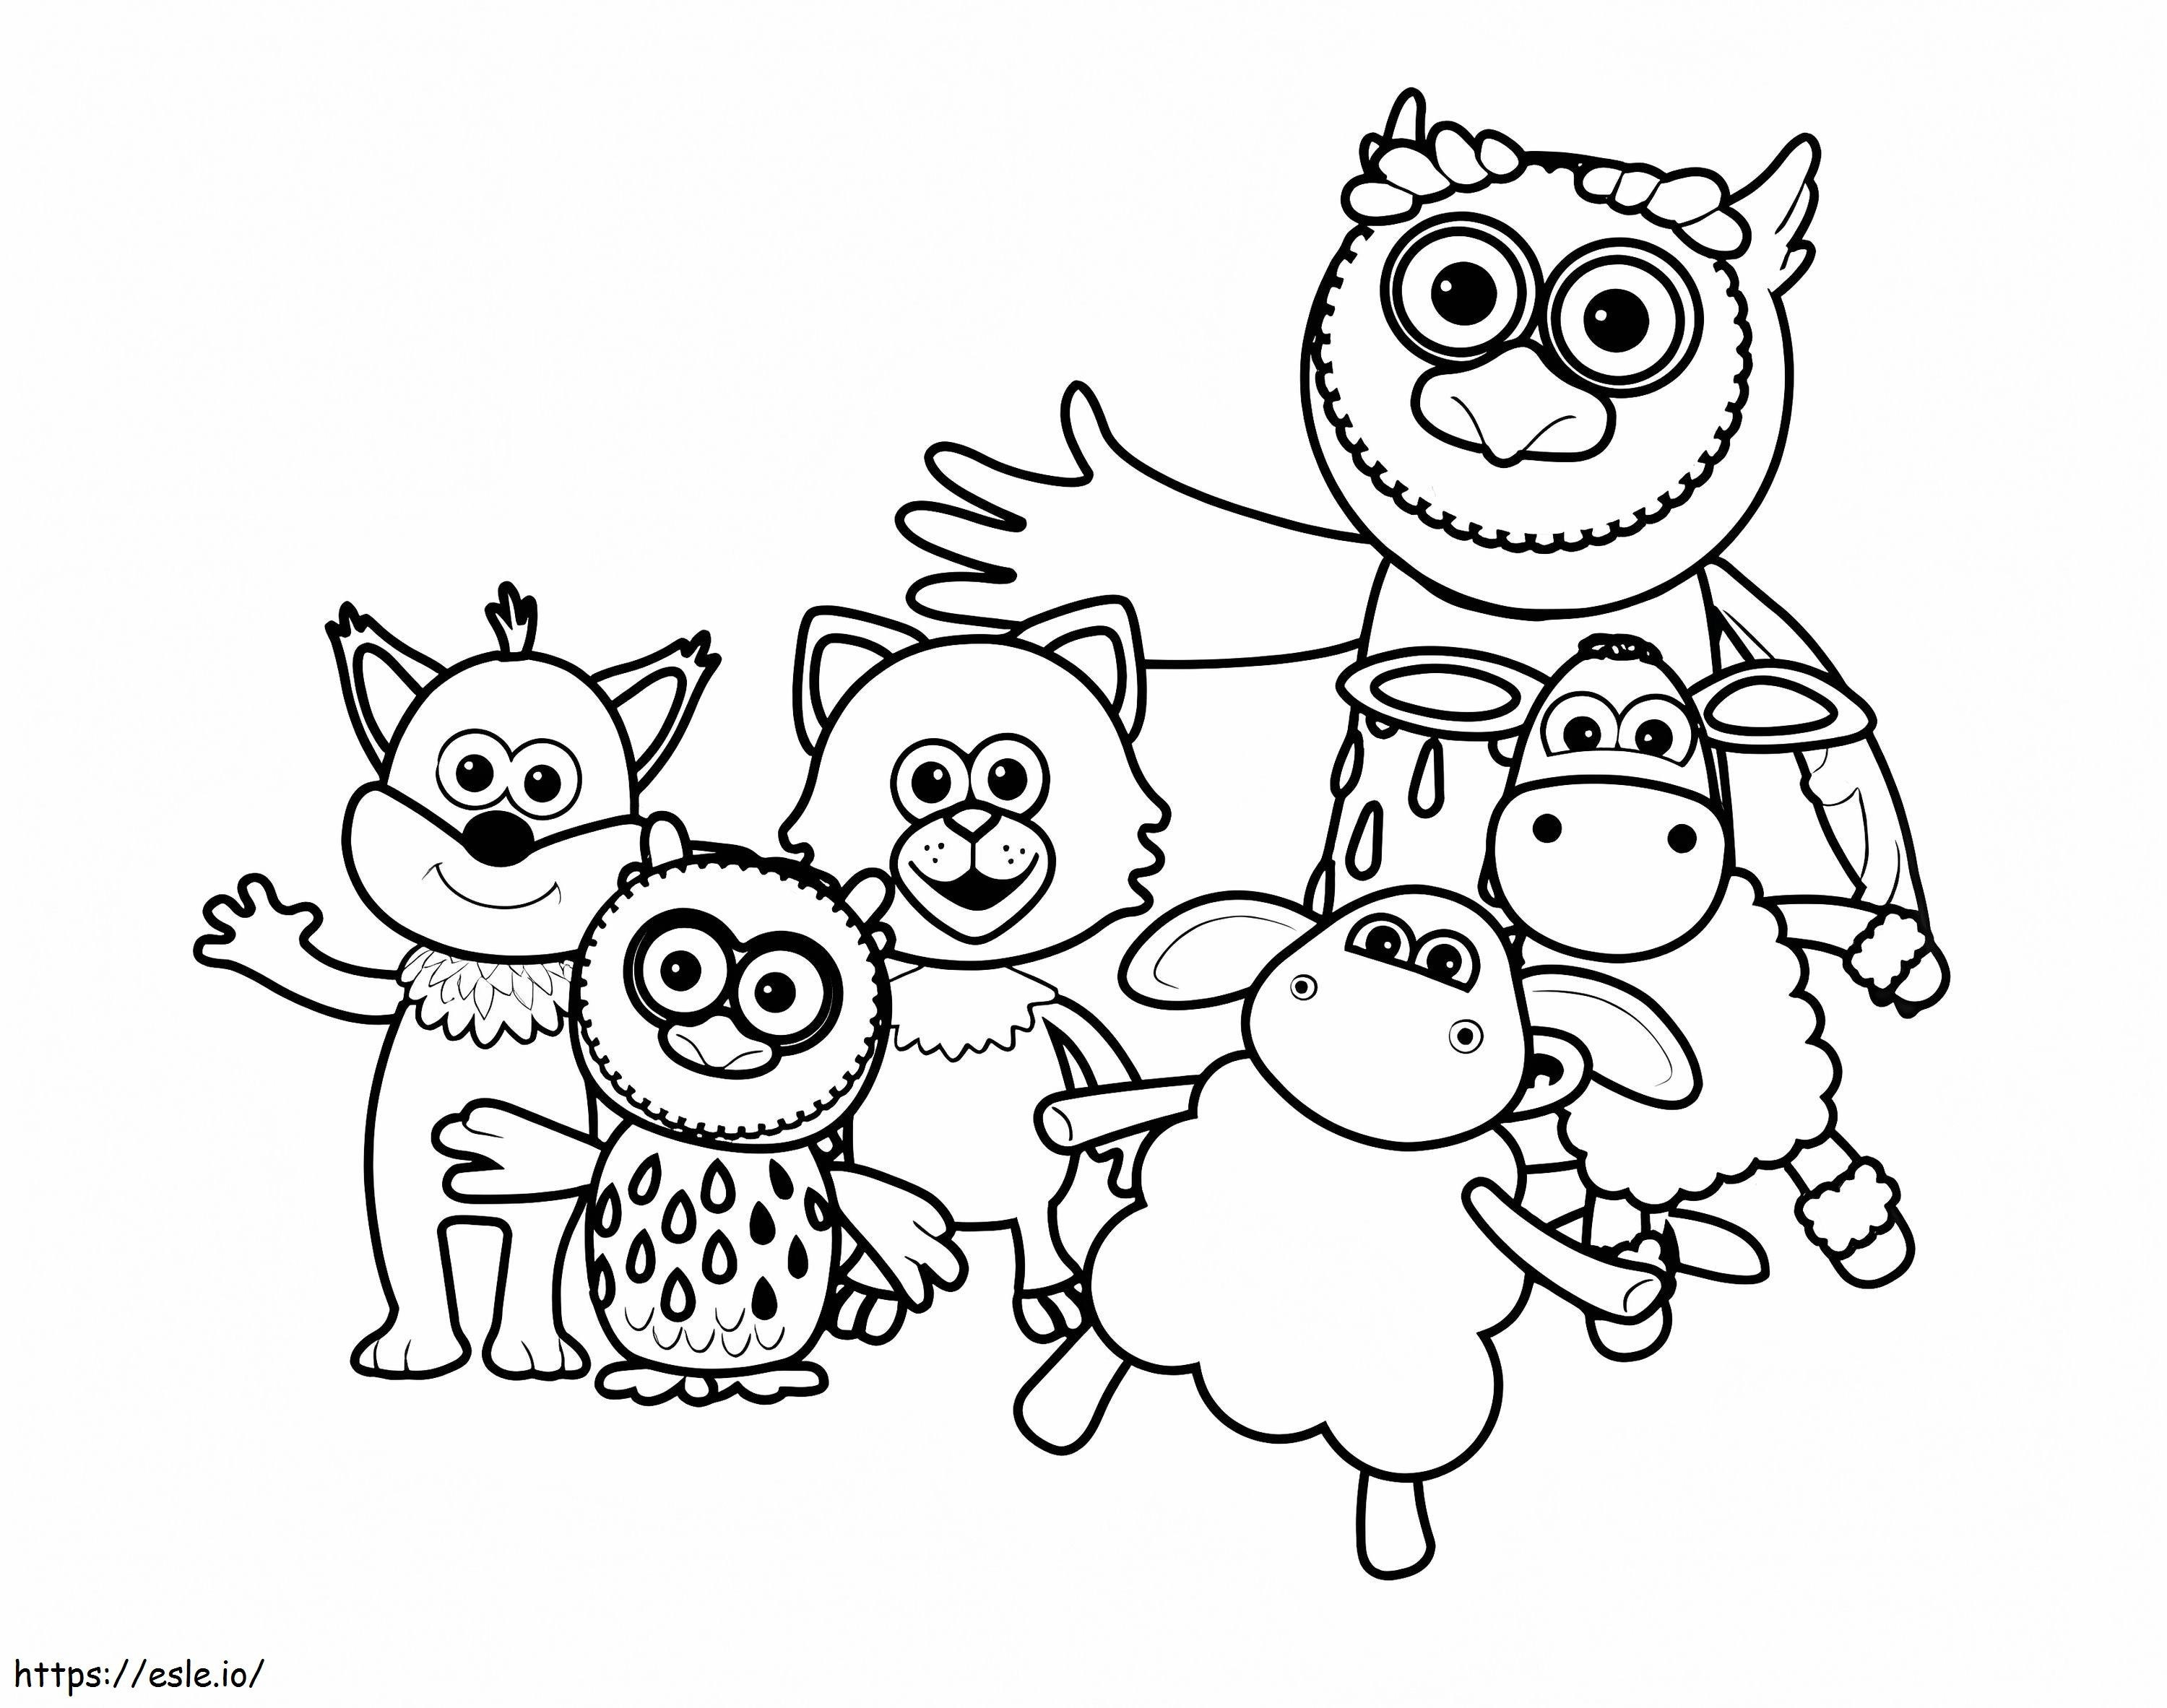 1581303773 Todos os personagens de Timmy Time para colorir